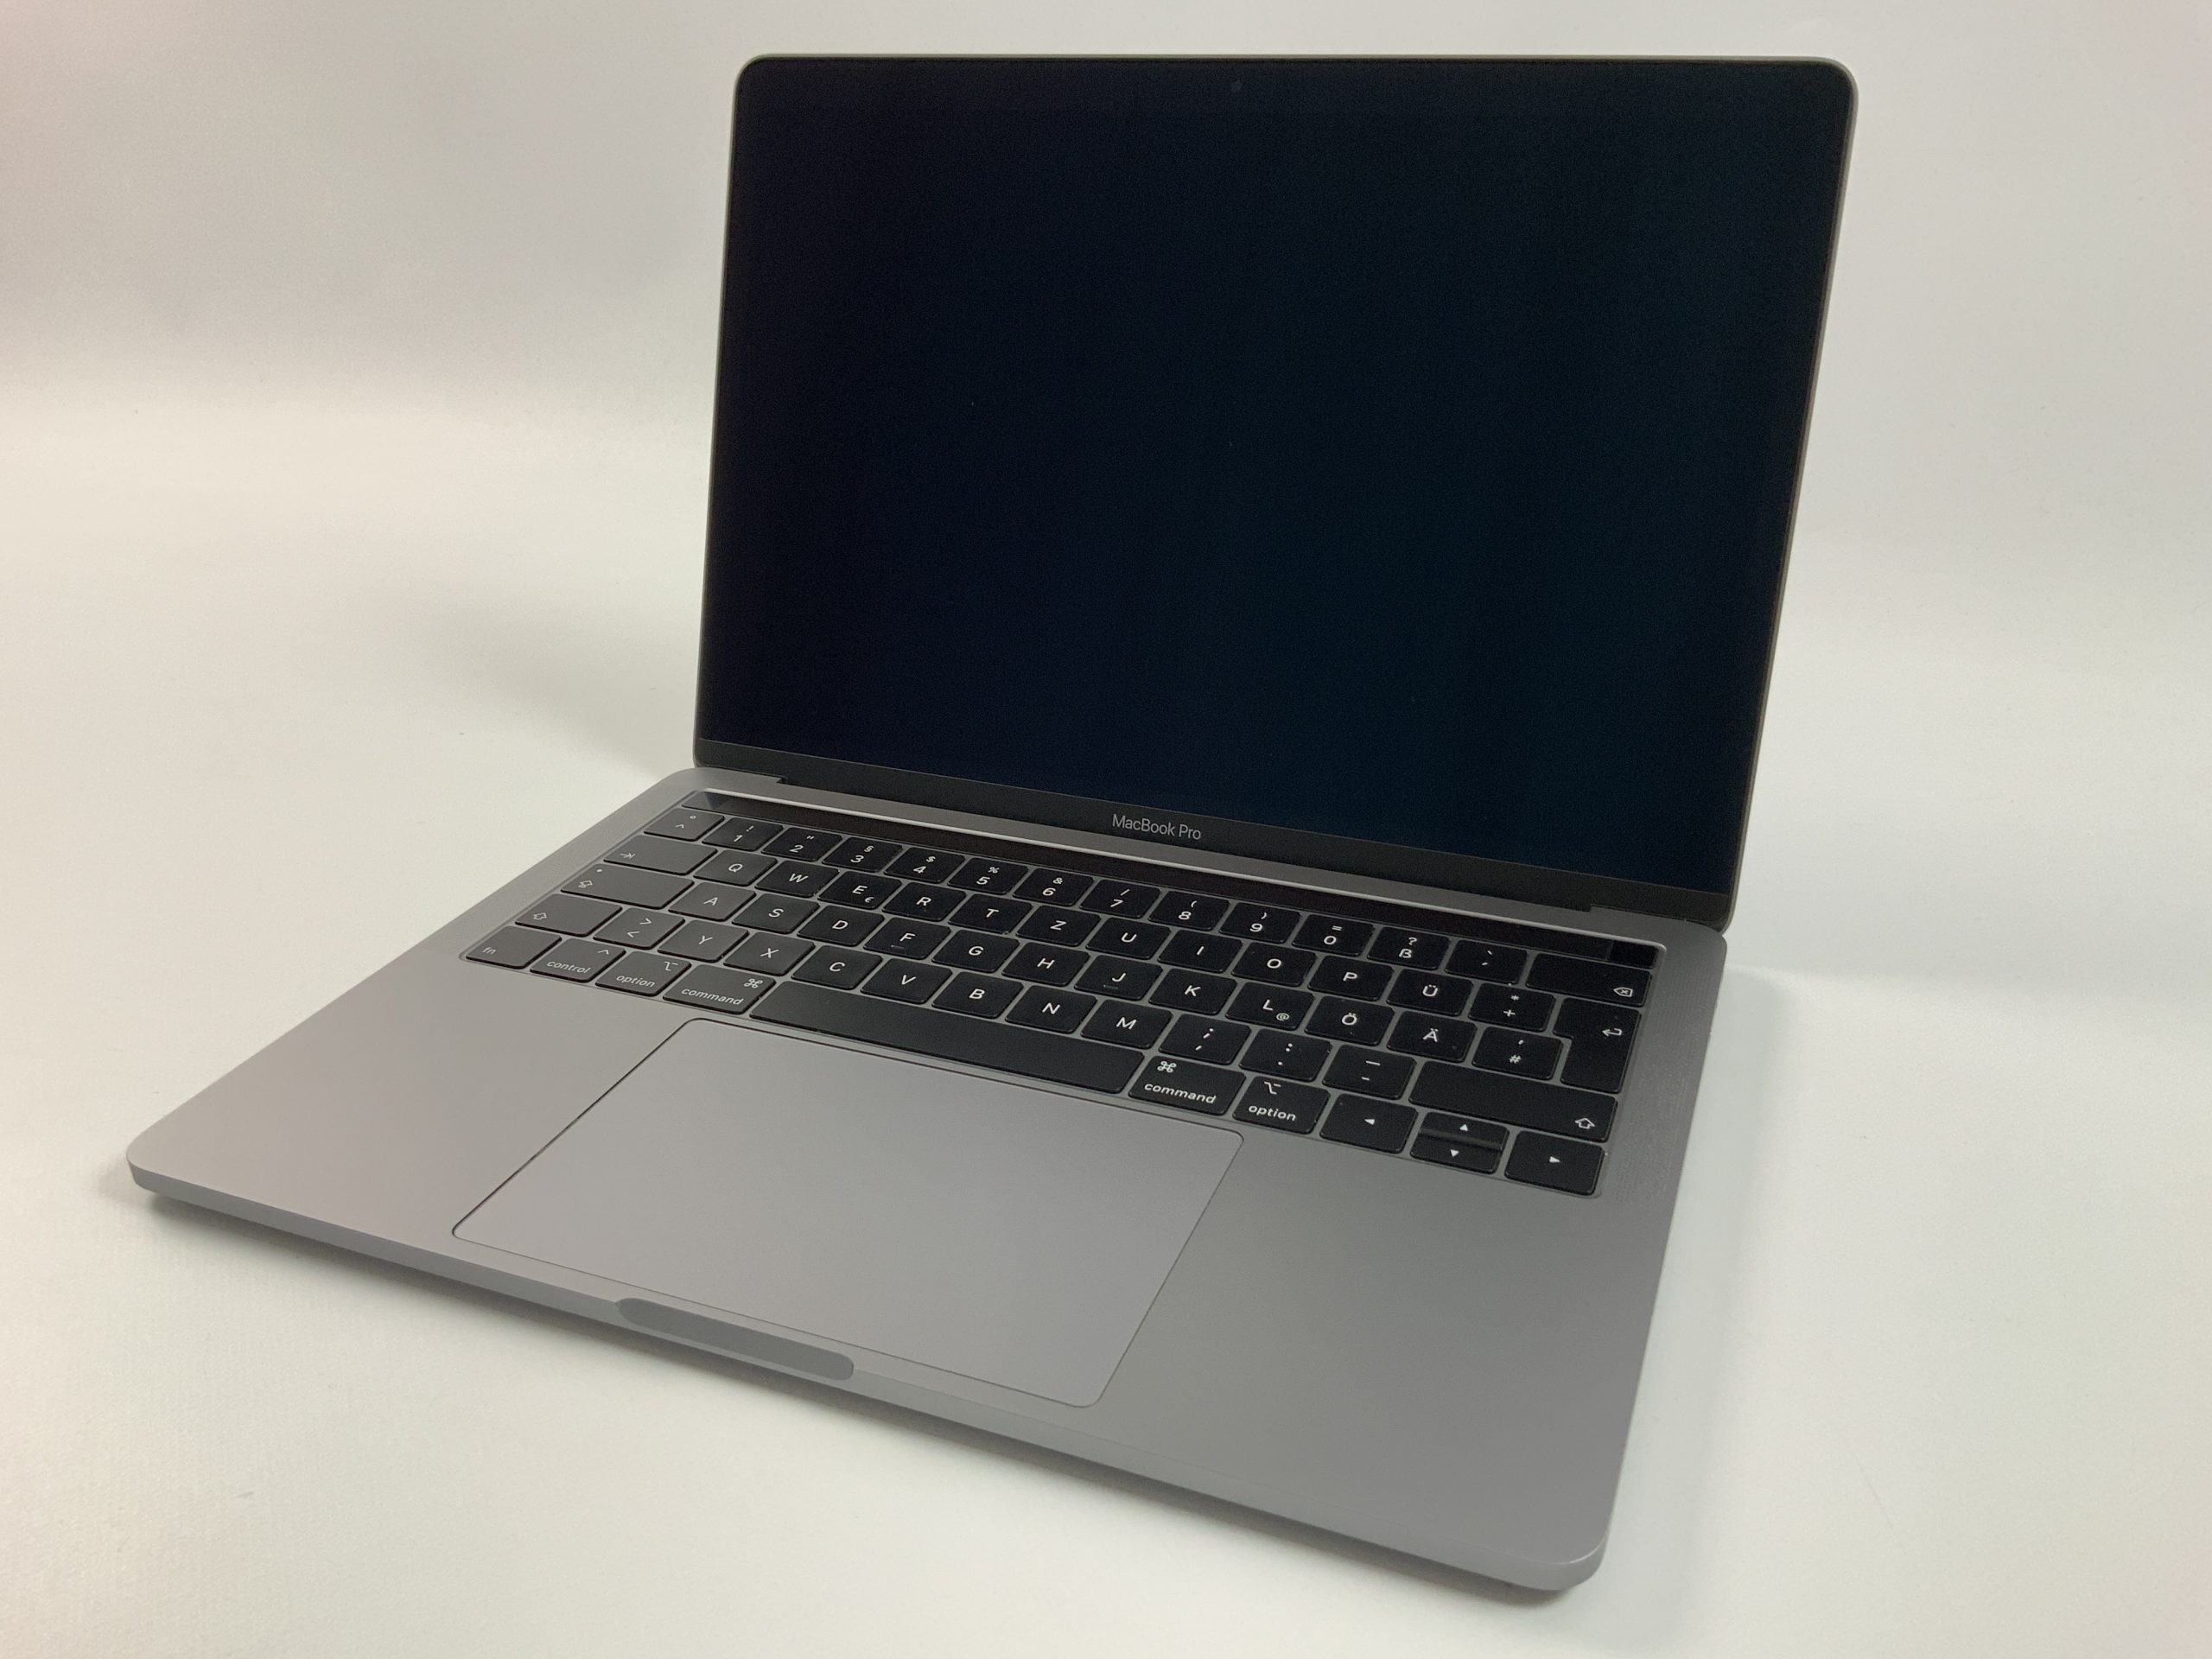 MacBook Pro 13" 4TBT Mid 2019 (Intel Quad-Core i5 2.4 GHz 16 GB RAM 512 GB SSD), Space Gray, Intel Quad-Core i5 2.4 GHz, 16 GB RAM, 512 GB SSD, Bild 1